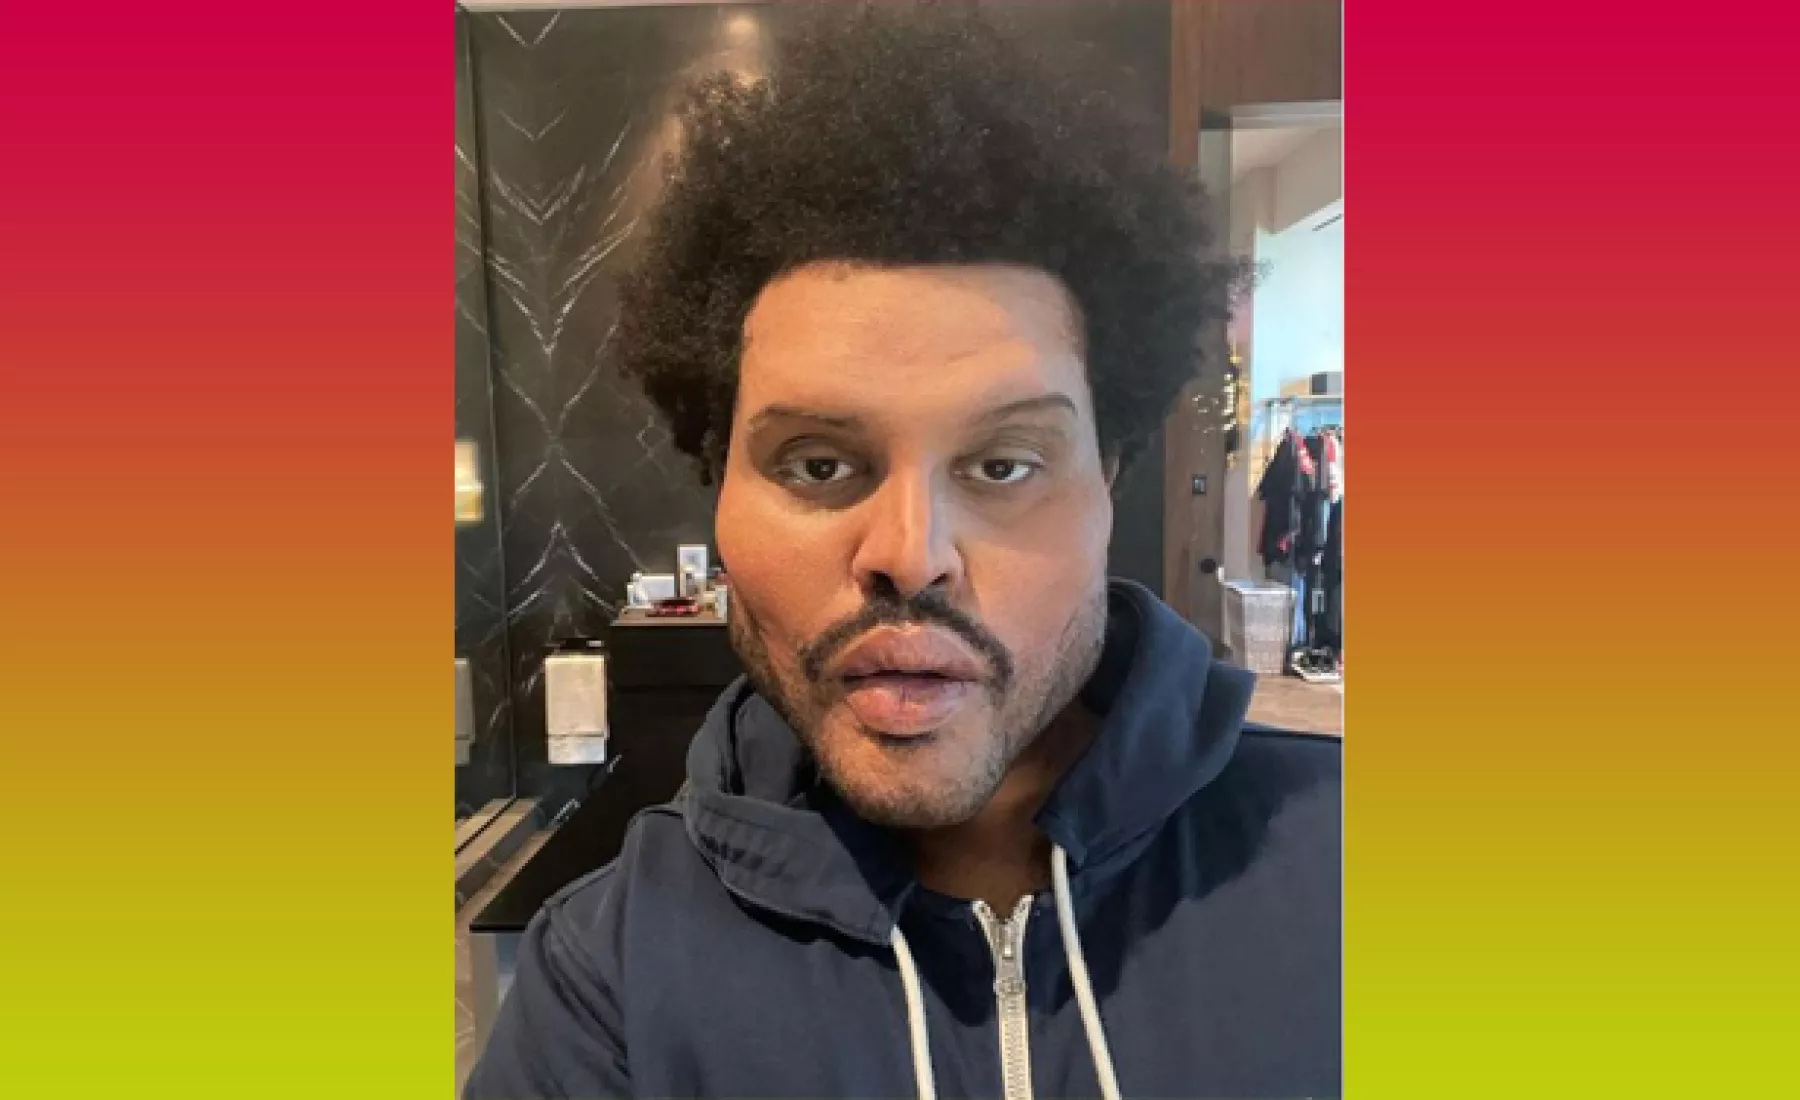 Sänger The Weeknd auf Instagram